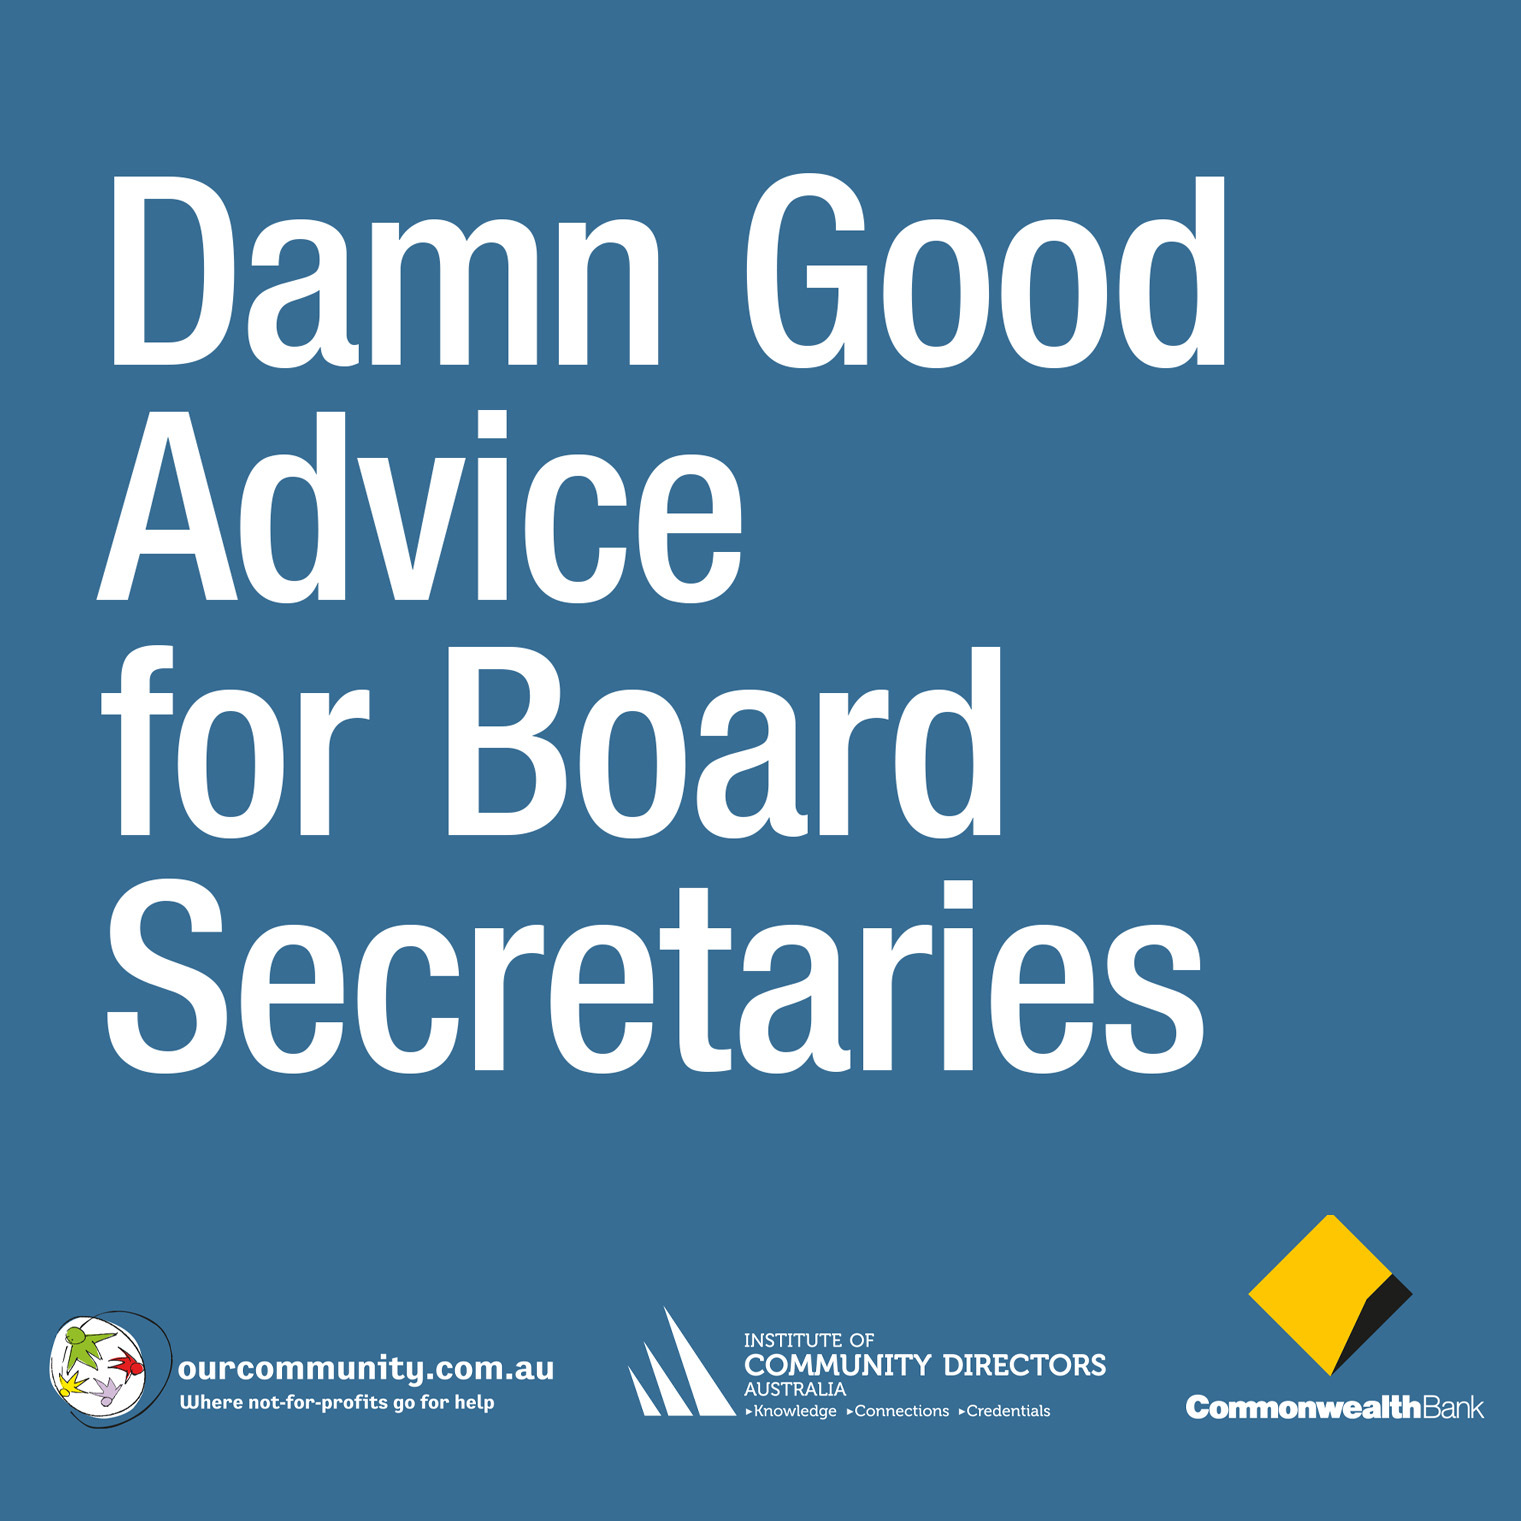 Damn Good Advice for Board Secretaries